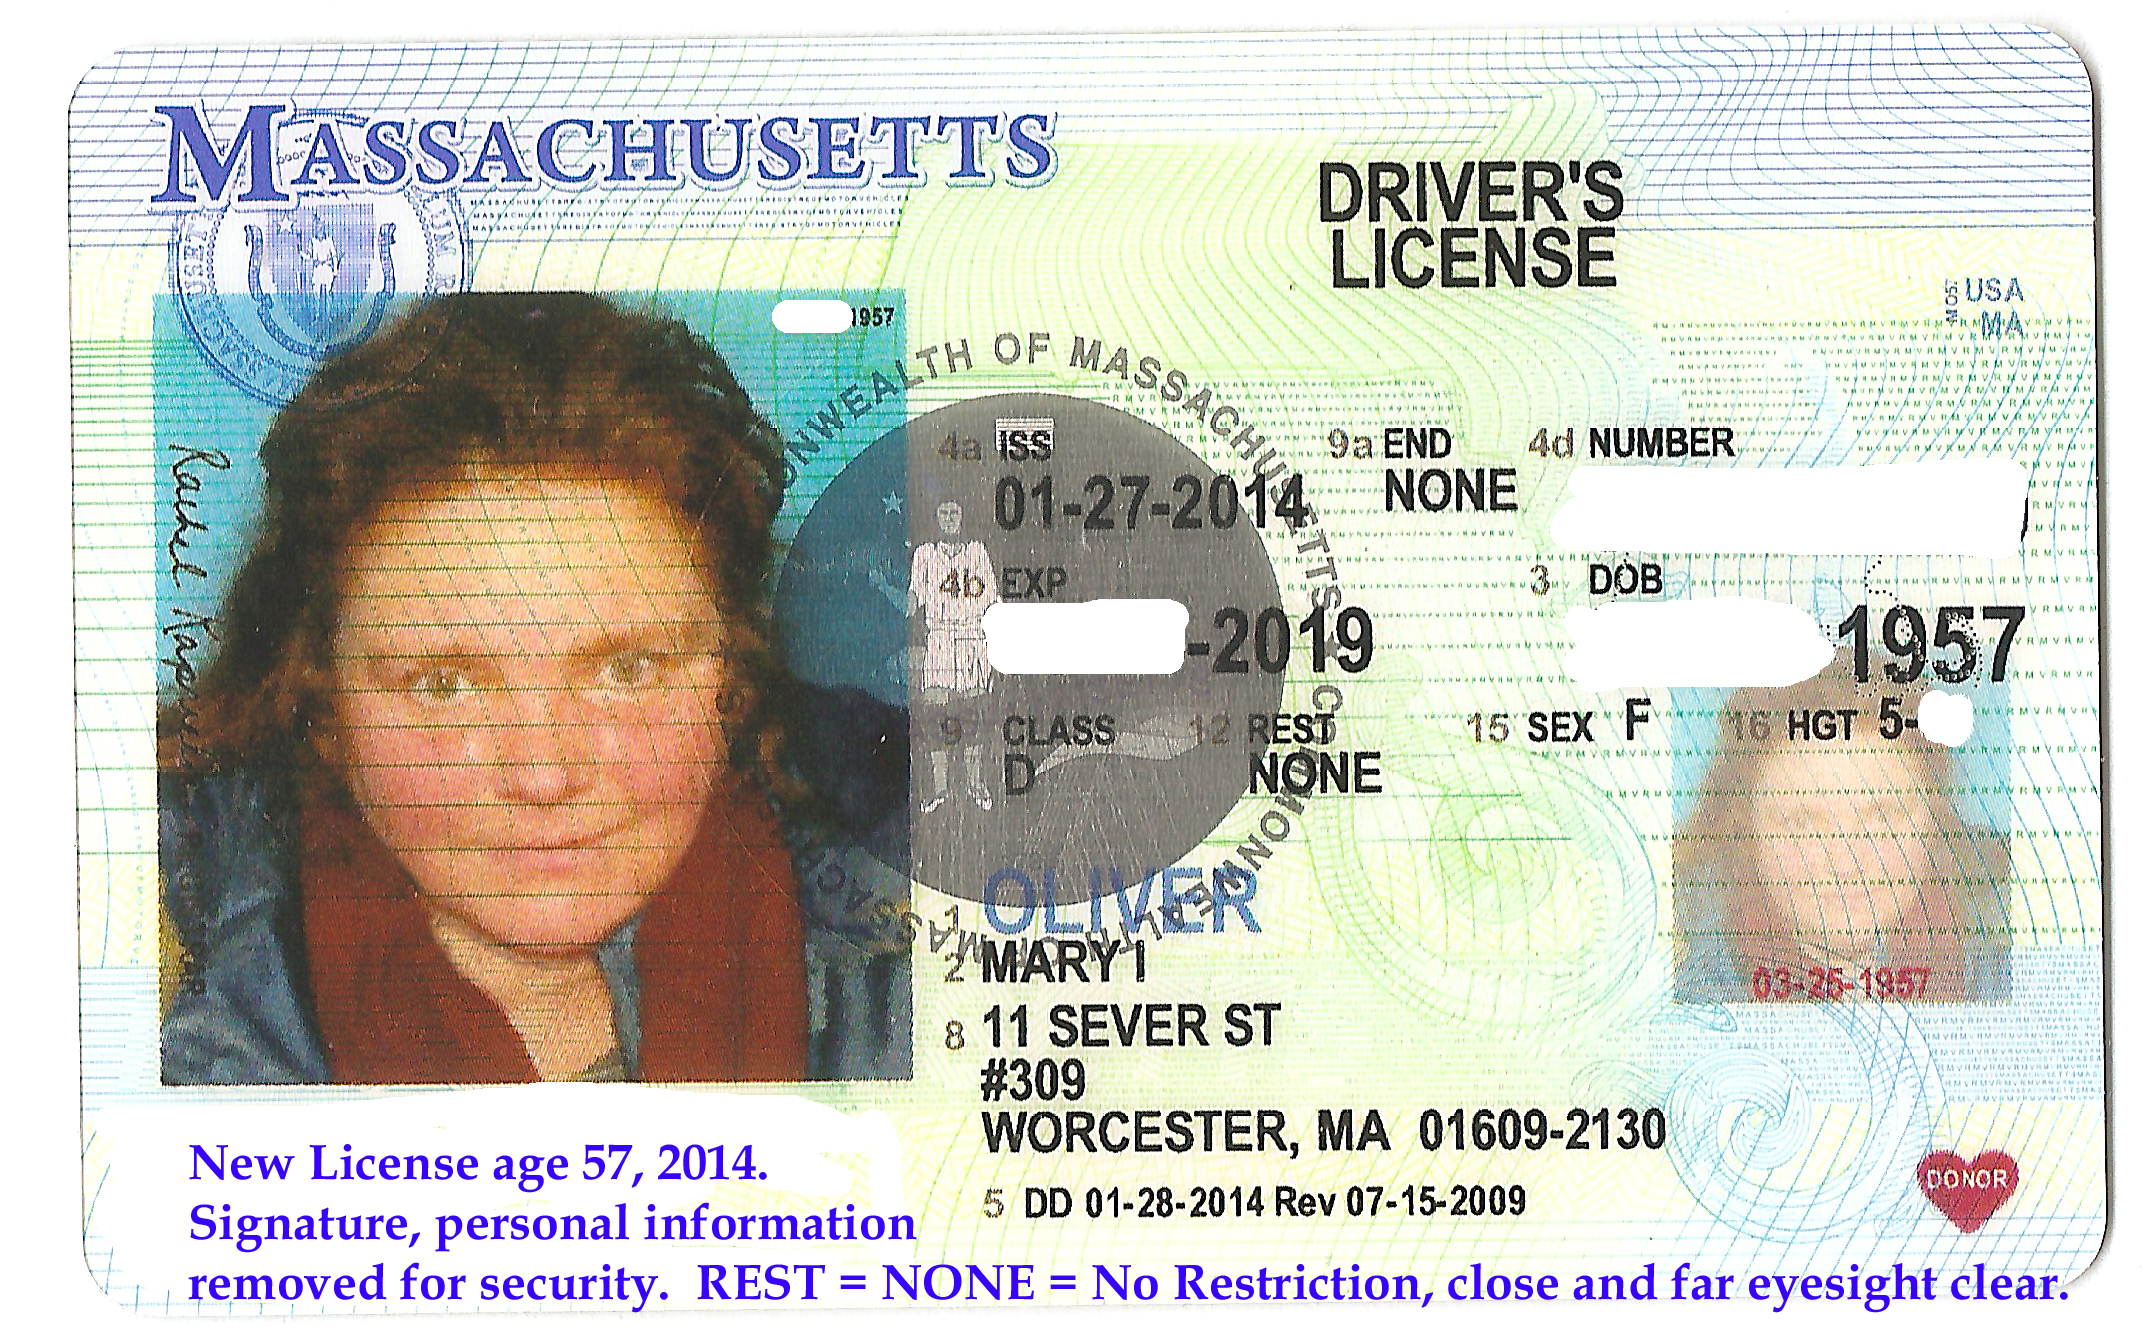 New License Feb., 2014. Age 57